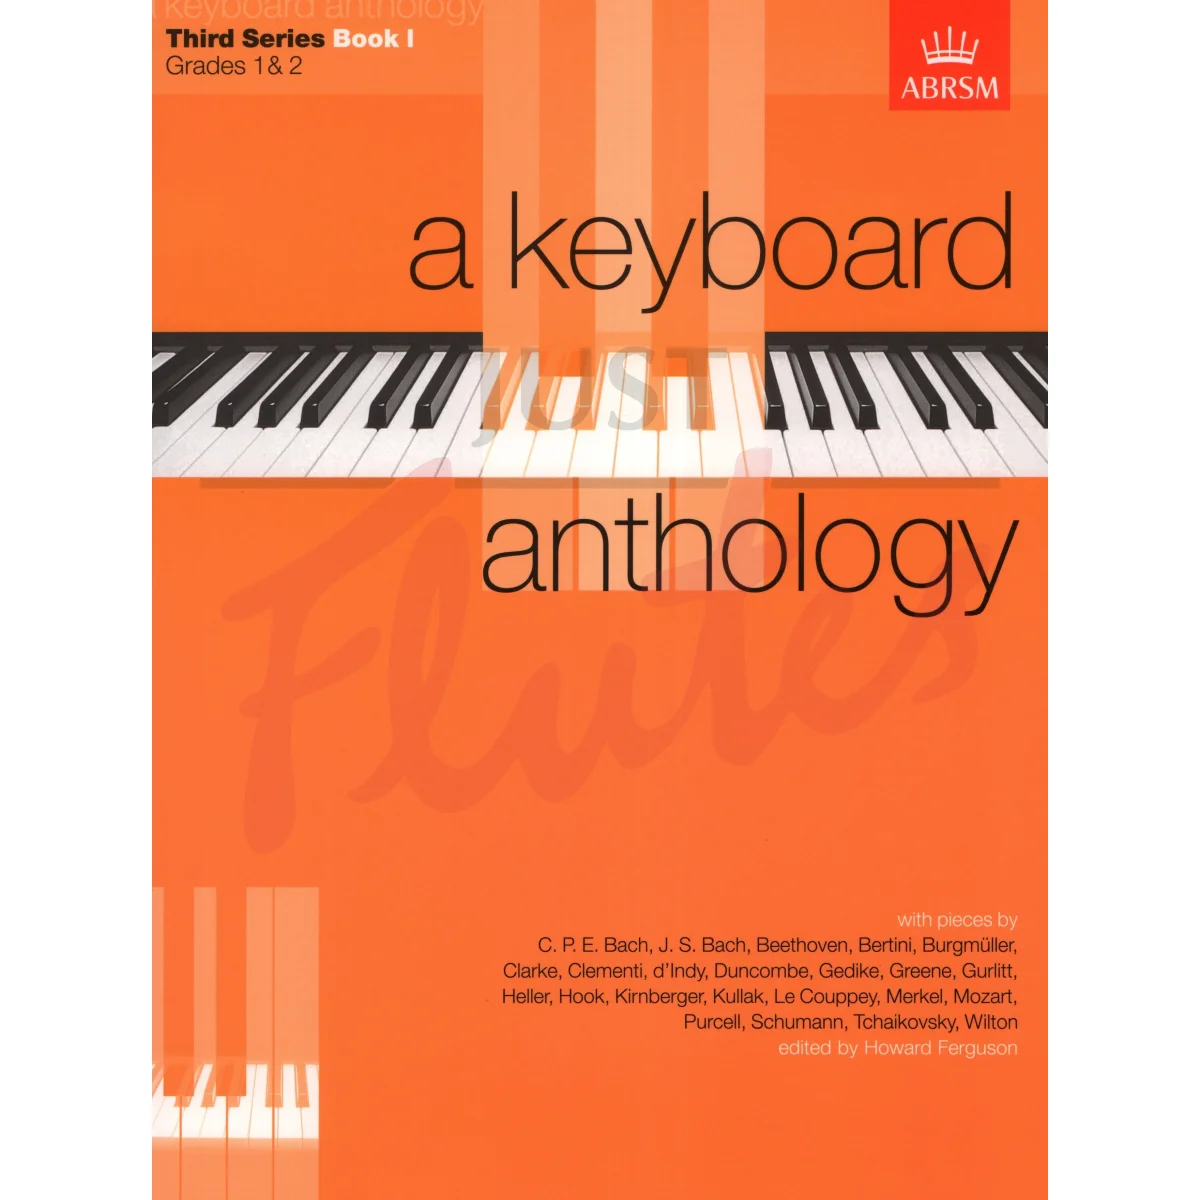 A Keyboard Anthology: Third Series Book 1